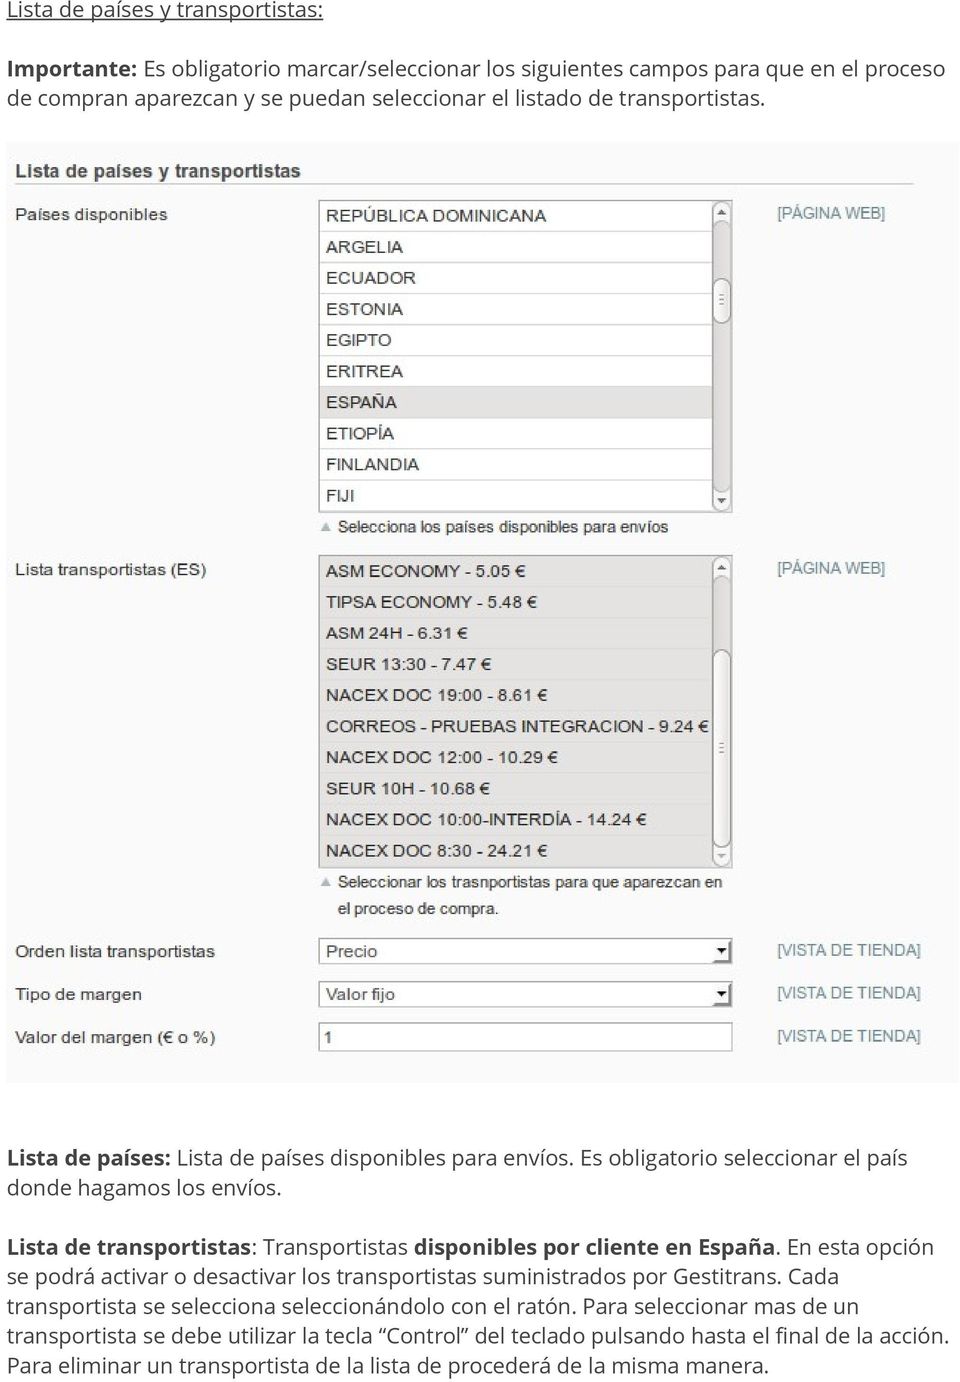 Lista de transportistas: Transportistas disponibles por cliente en España. En esta opción se podrá activar o desactivar los transportistas suministrados por Gestitrans.